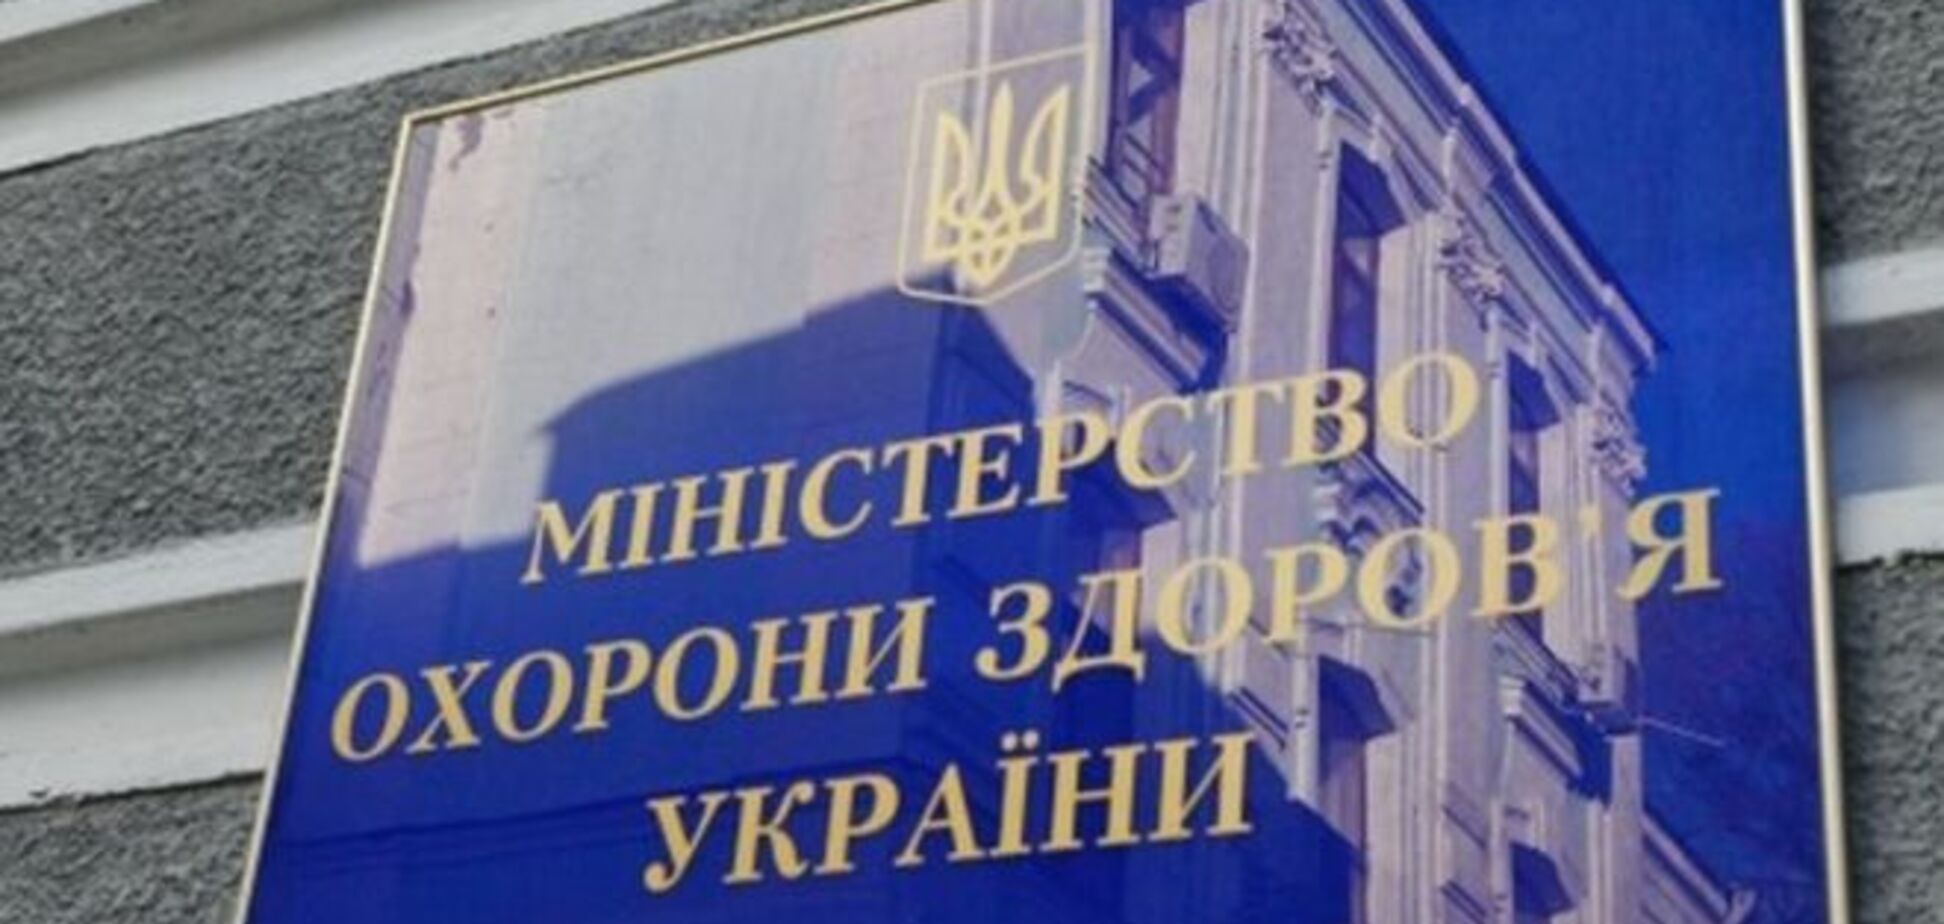 Генпрокурор пообещал расследовать нарушения в деятельности нового руководства Минздрава